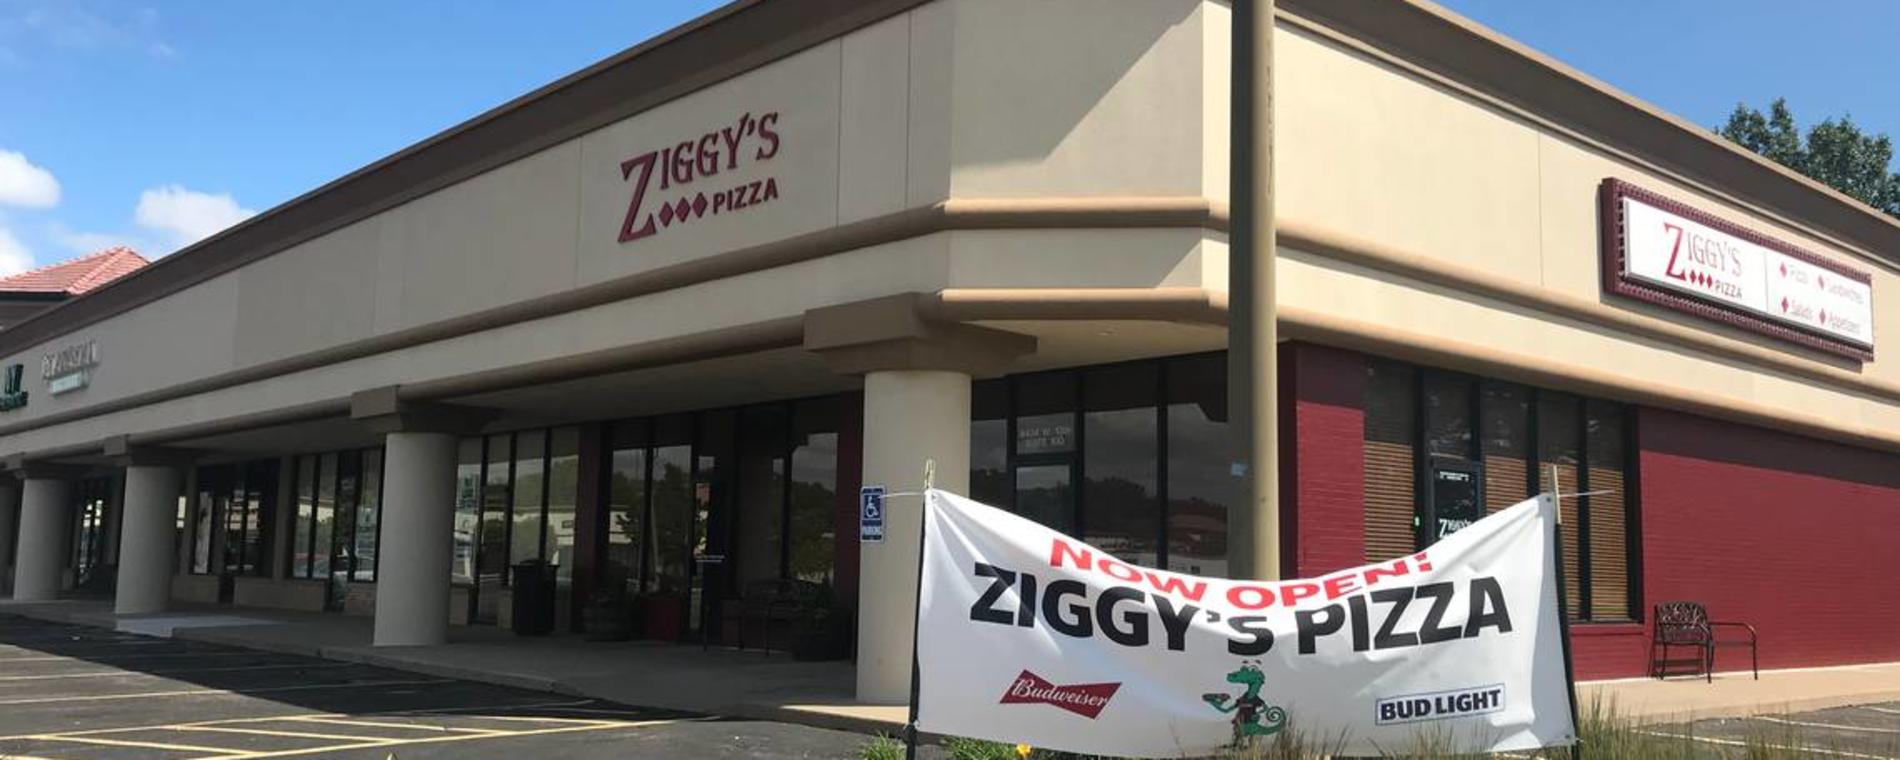 Ziggy's West exterior Visit Wichita